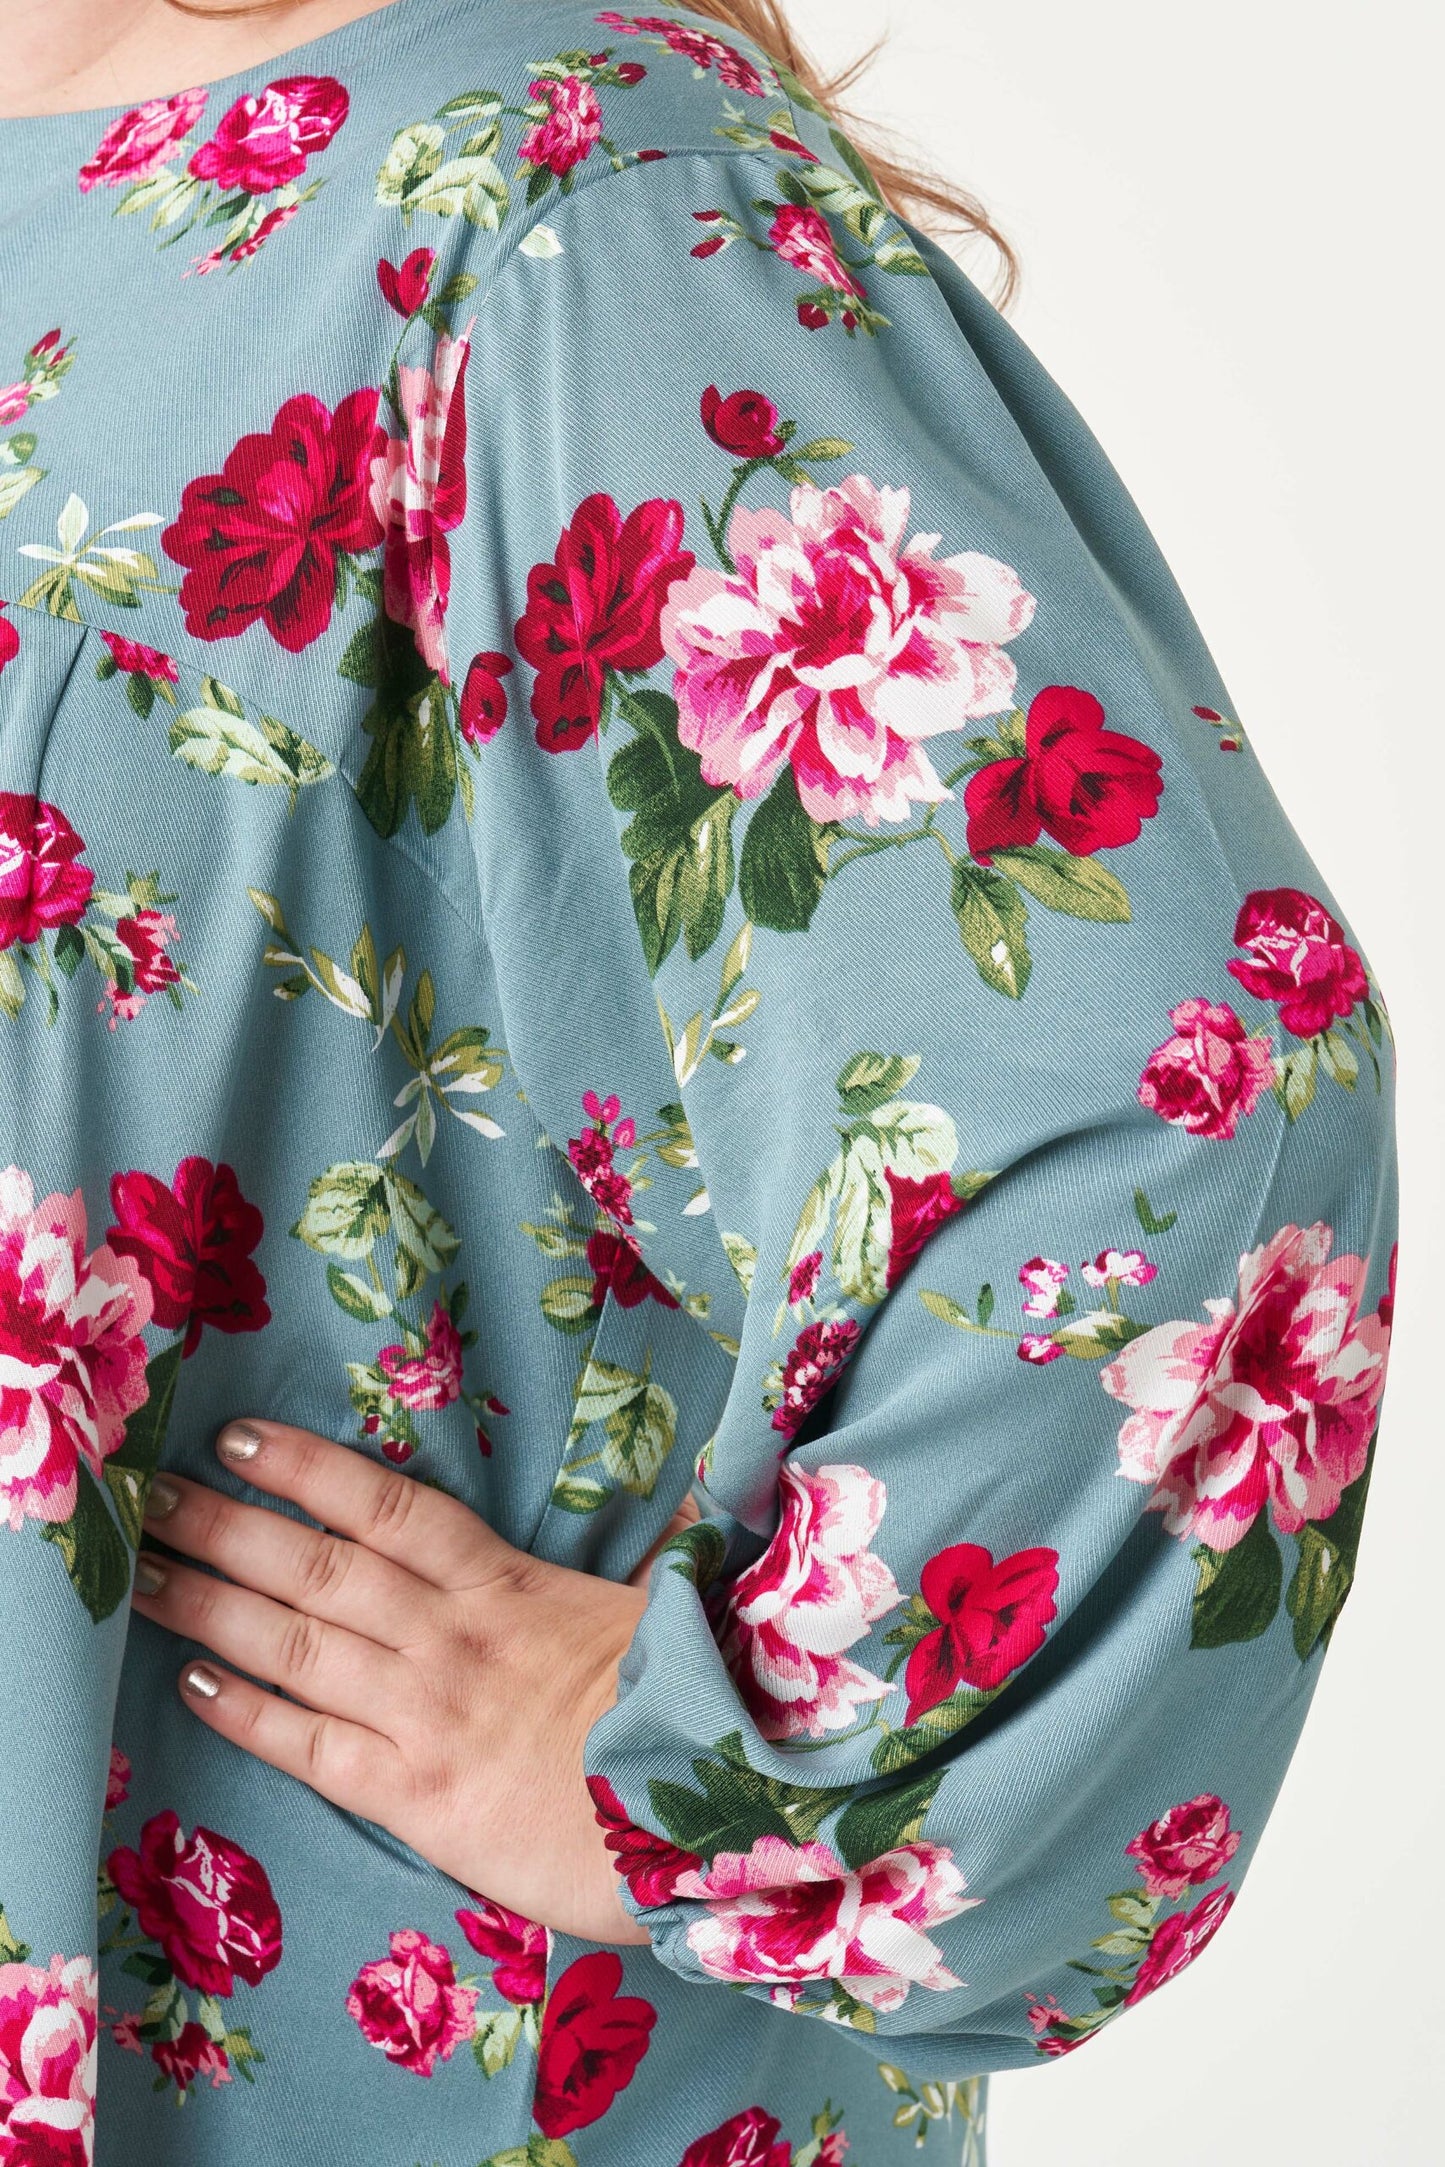 Frida Blouse and Dress PDF Sewing Pattern